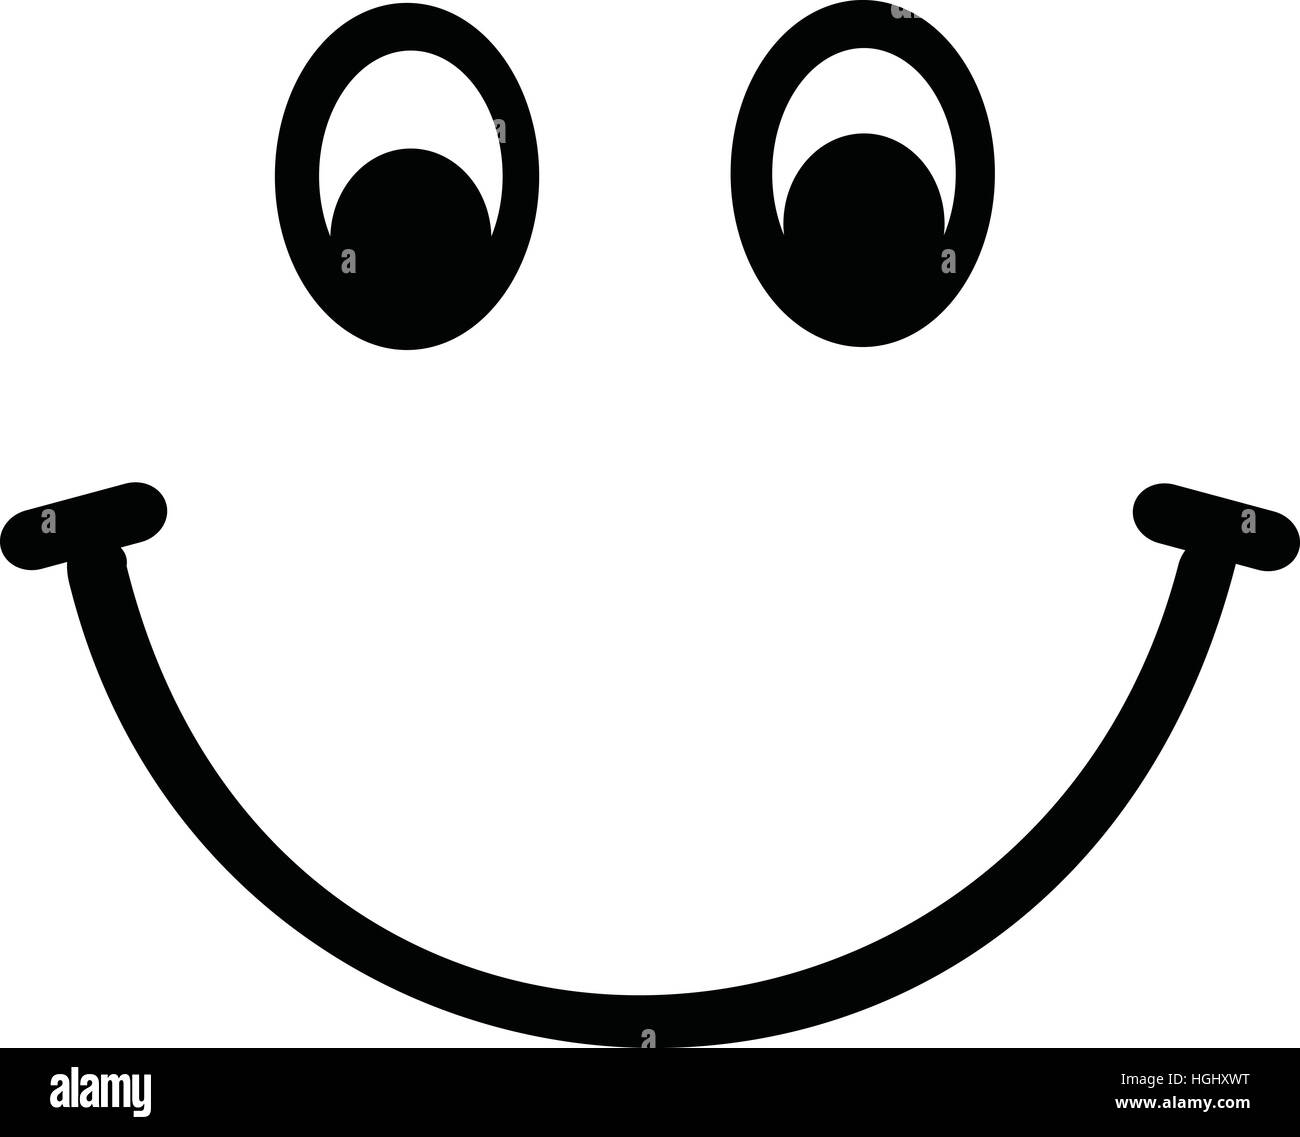 Smiley face Stock Photo